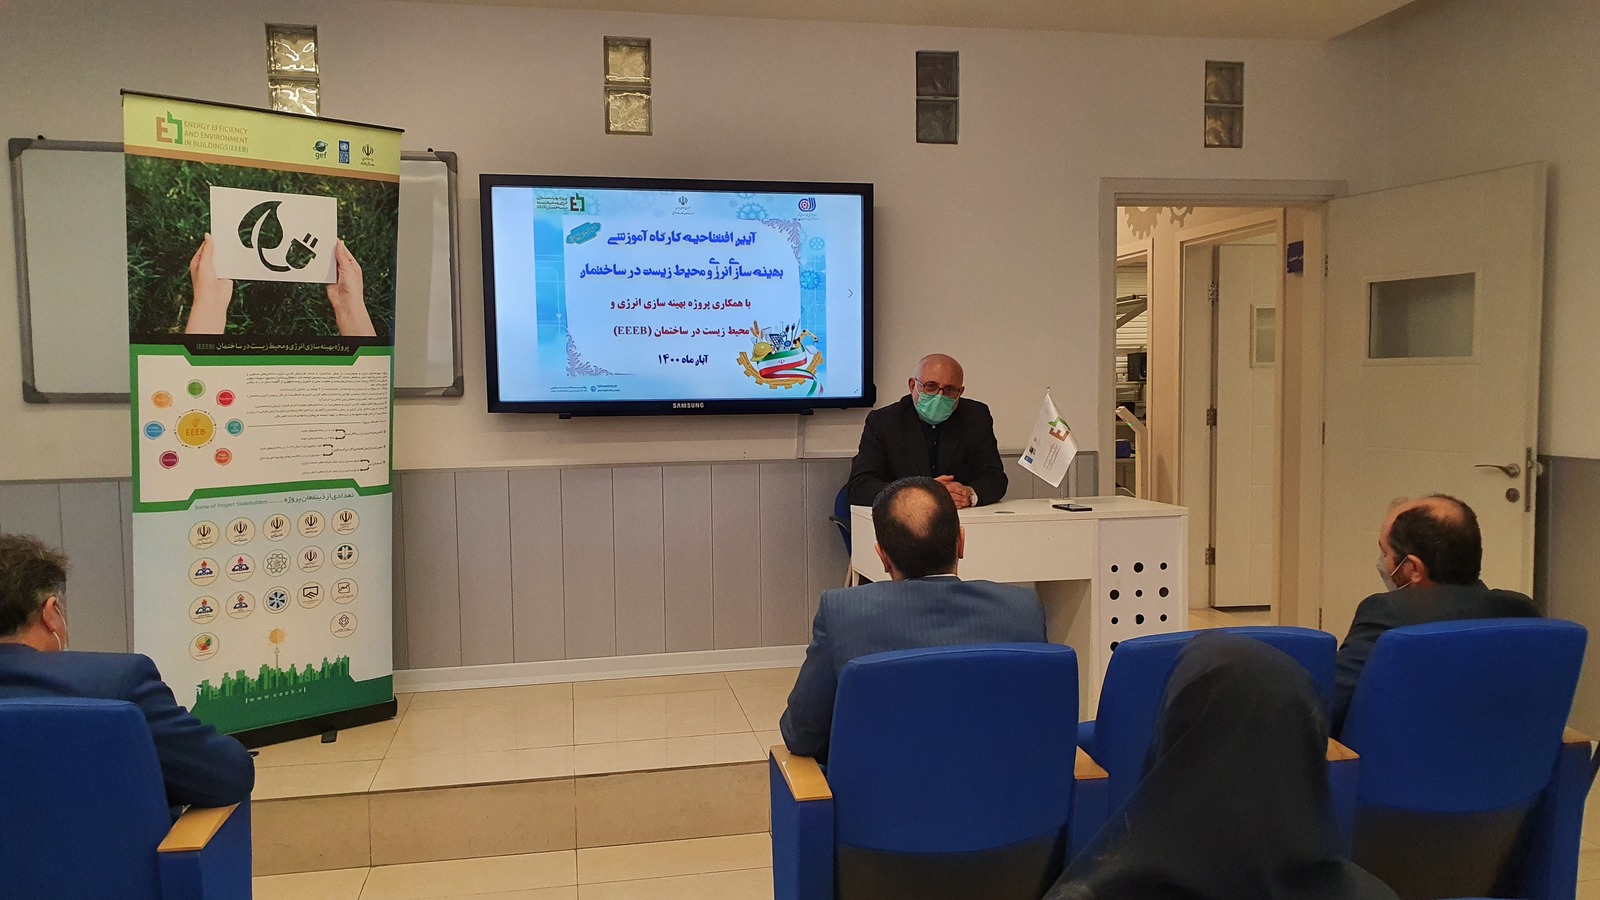 افتتاح کارگاه آموزشی بهینه سازی مصرف انرژی در مرکز فنی و حرفه ای شهید سهی تهران